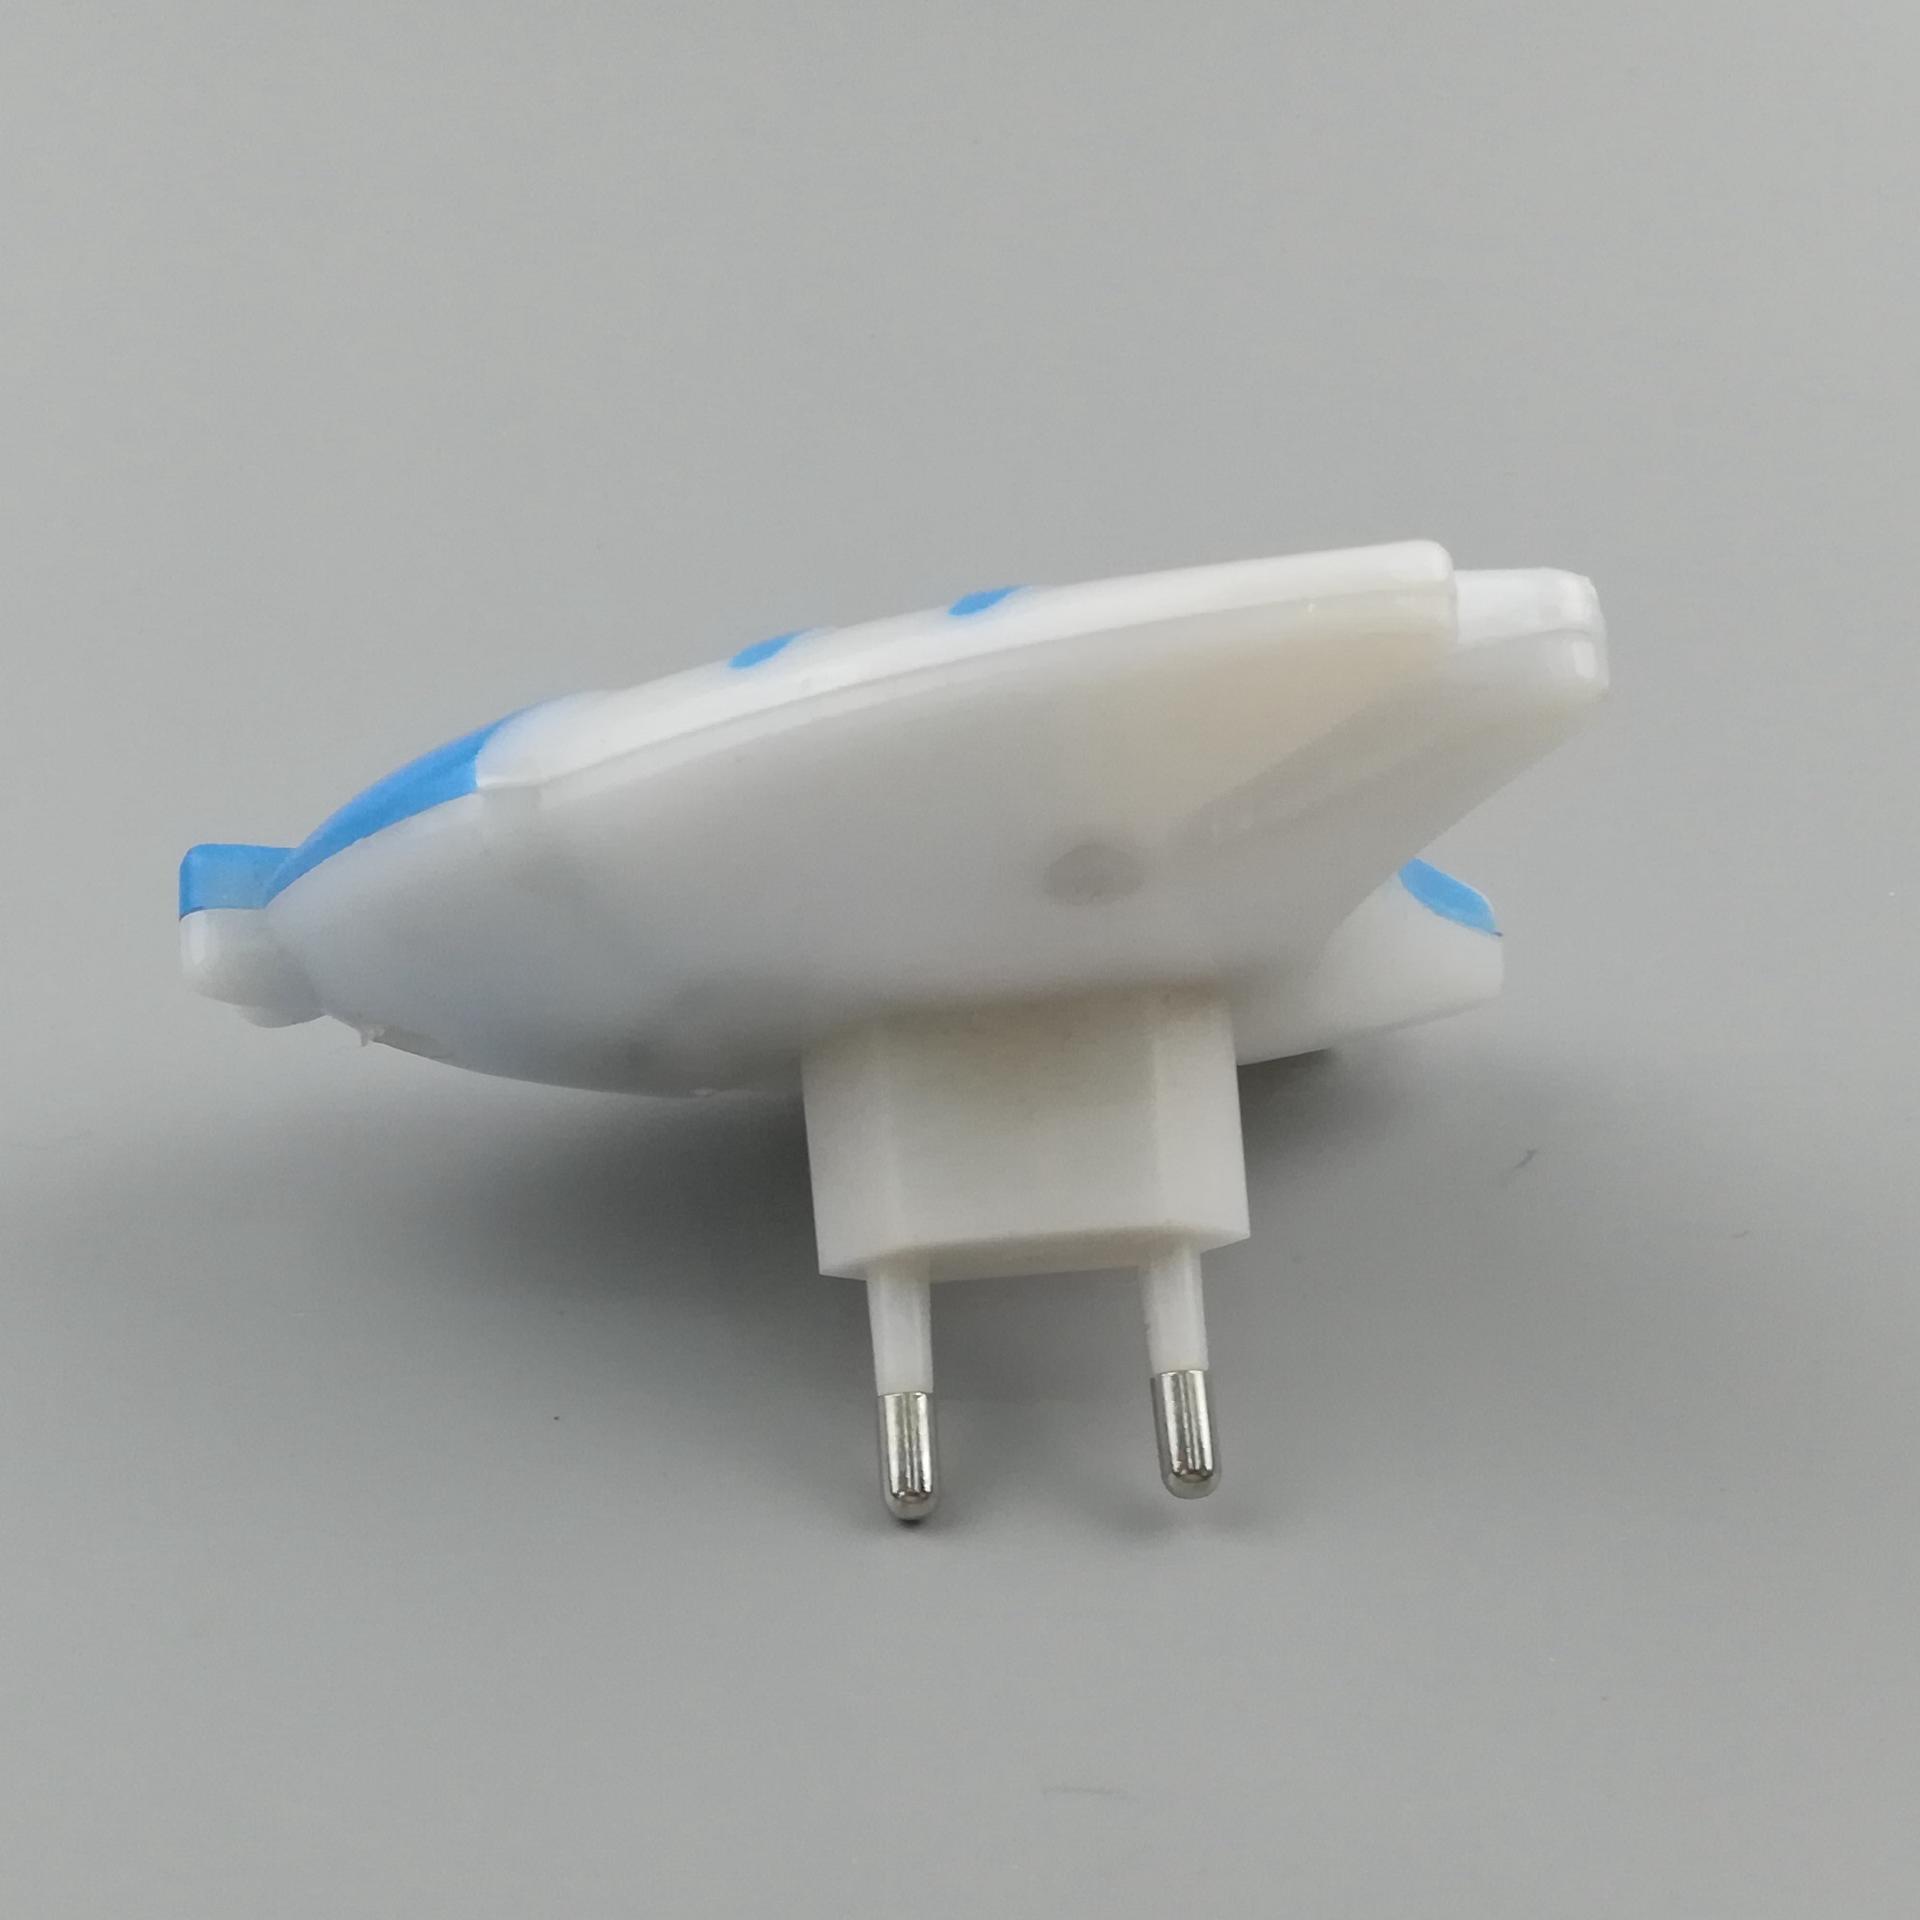 W037 Fish cute shape LED SMD mini switch plug in night light 0.6W AC110V 220V W037